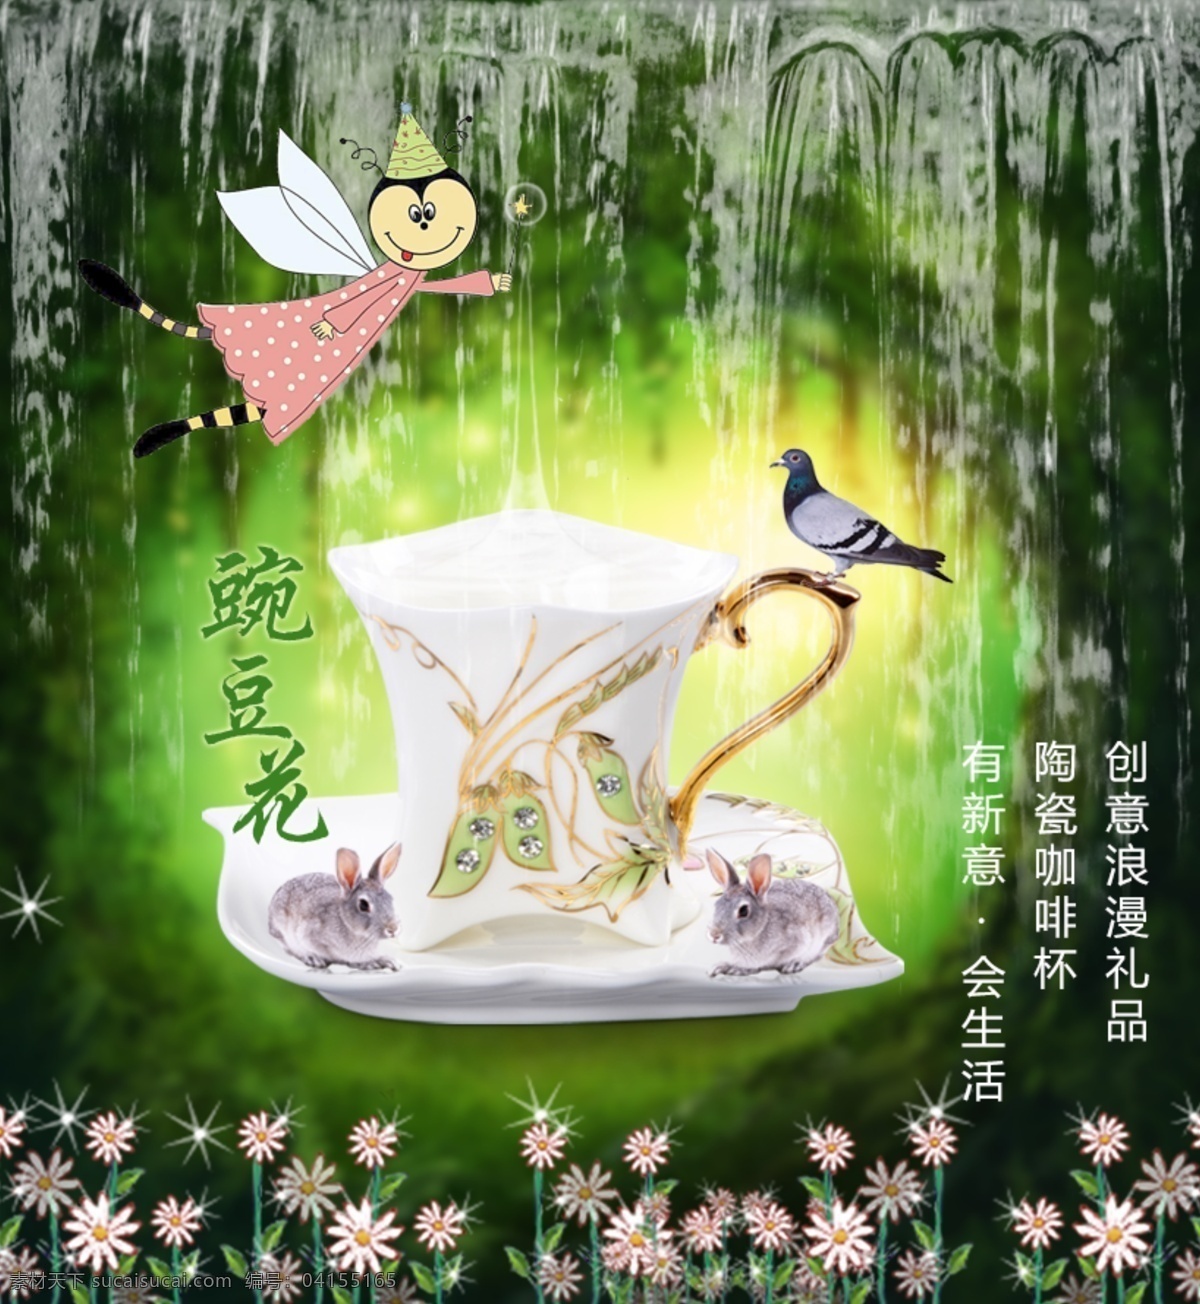 豌豆 花 杯子 海报 创意 咖啡杯 豌豆花 森林系